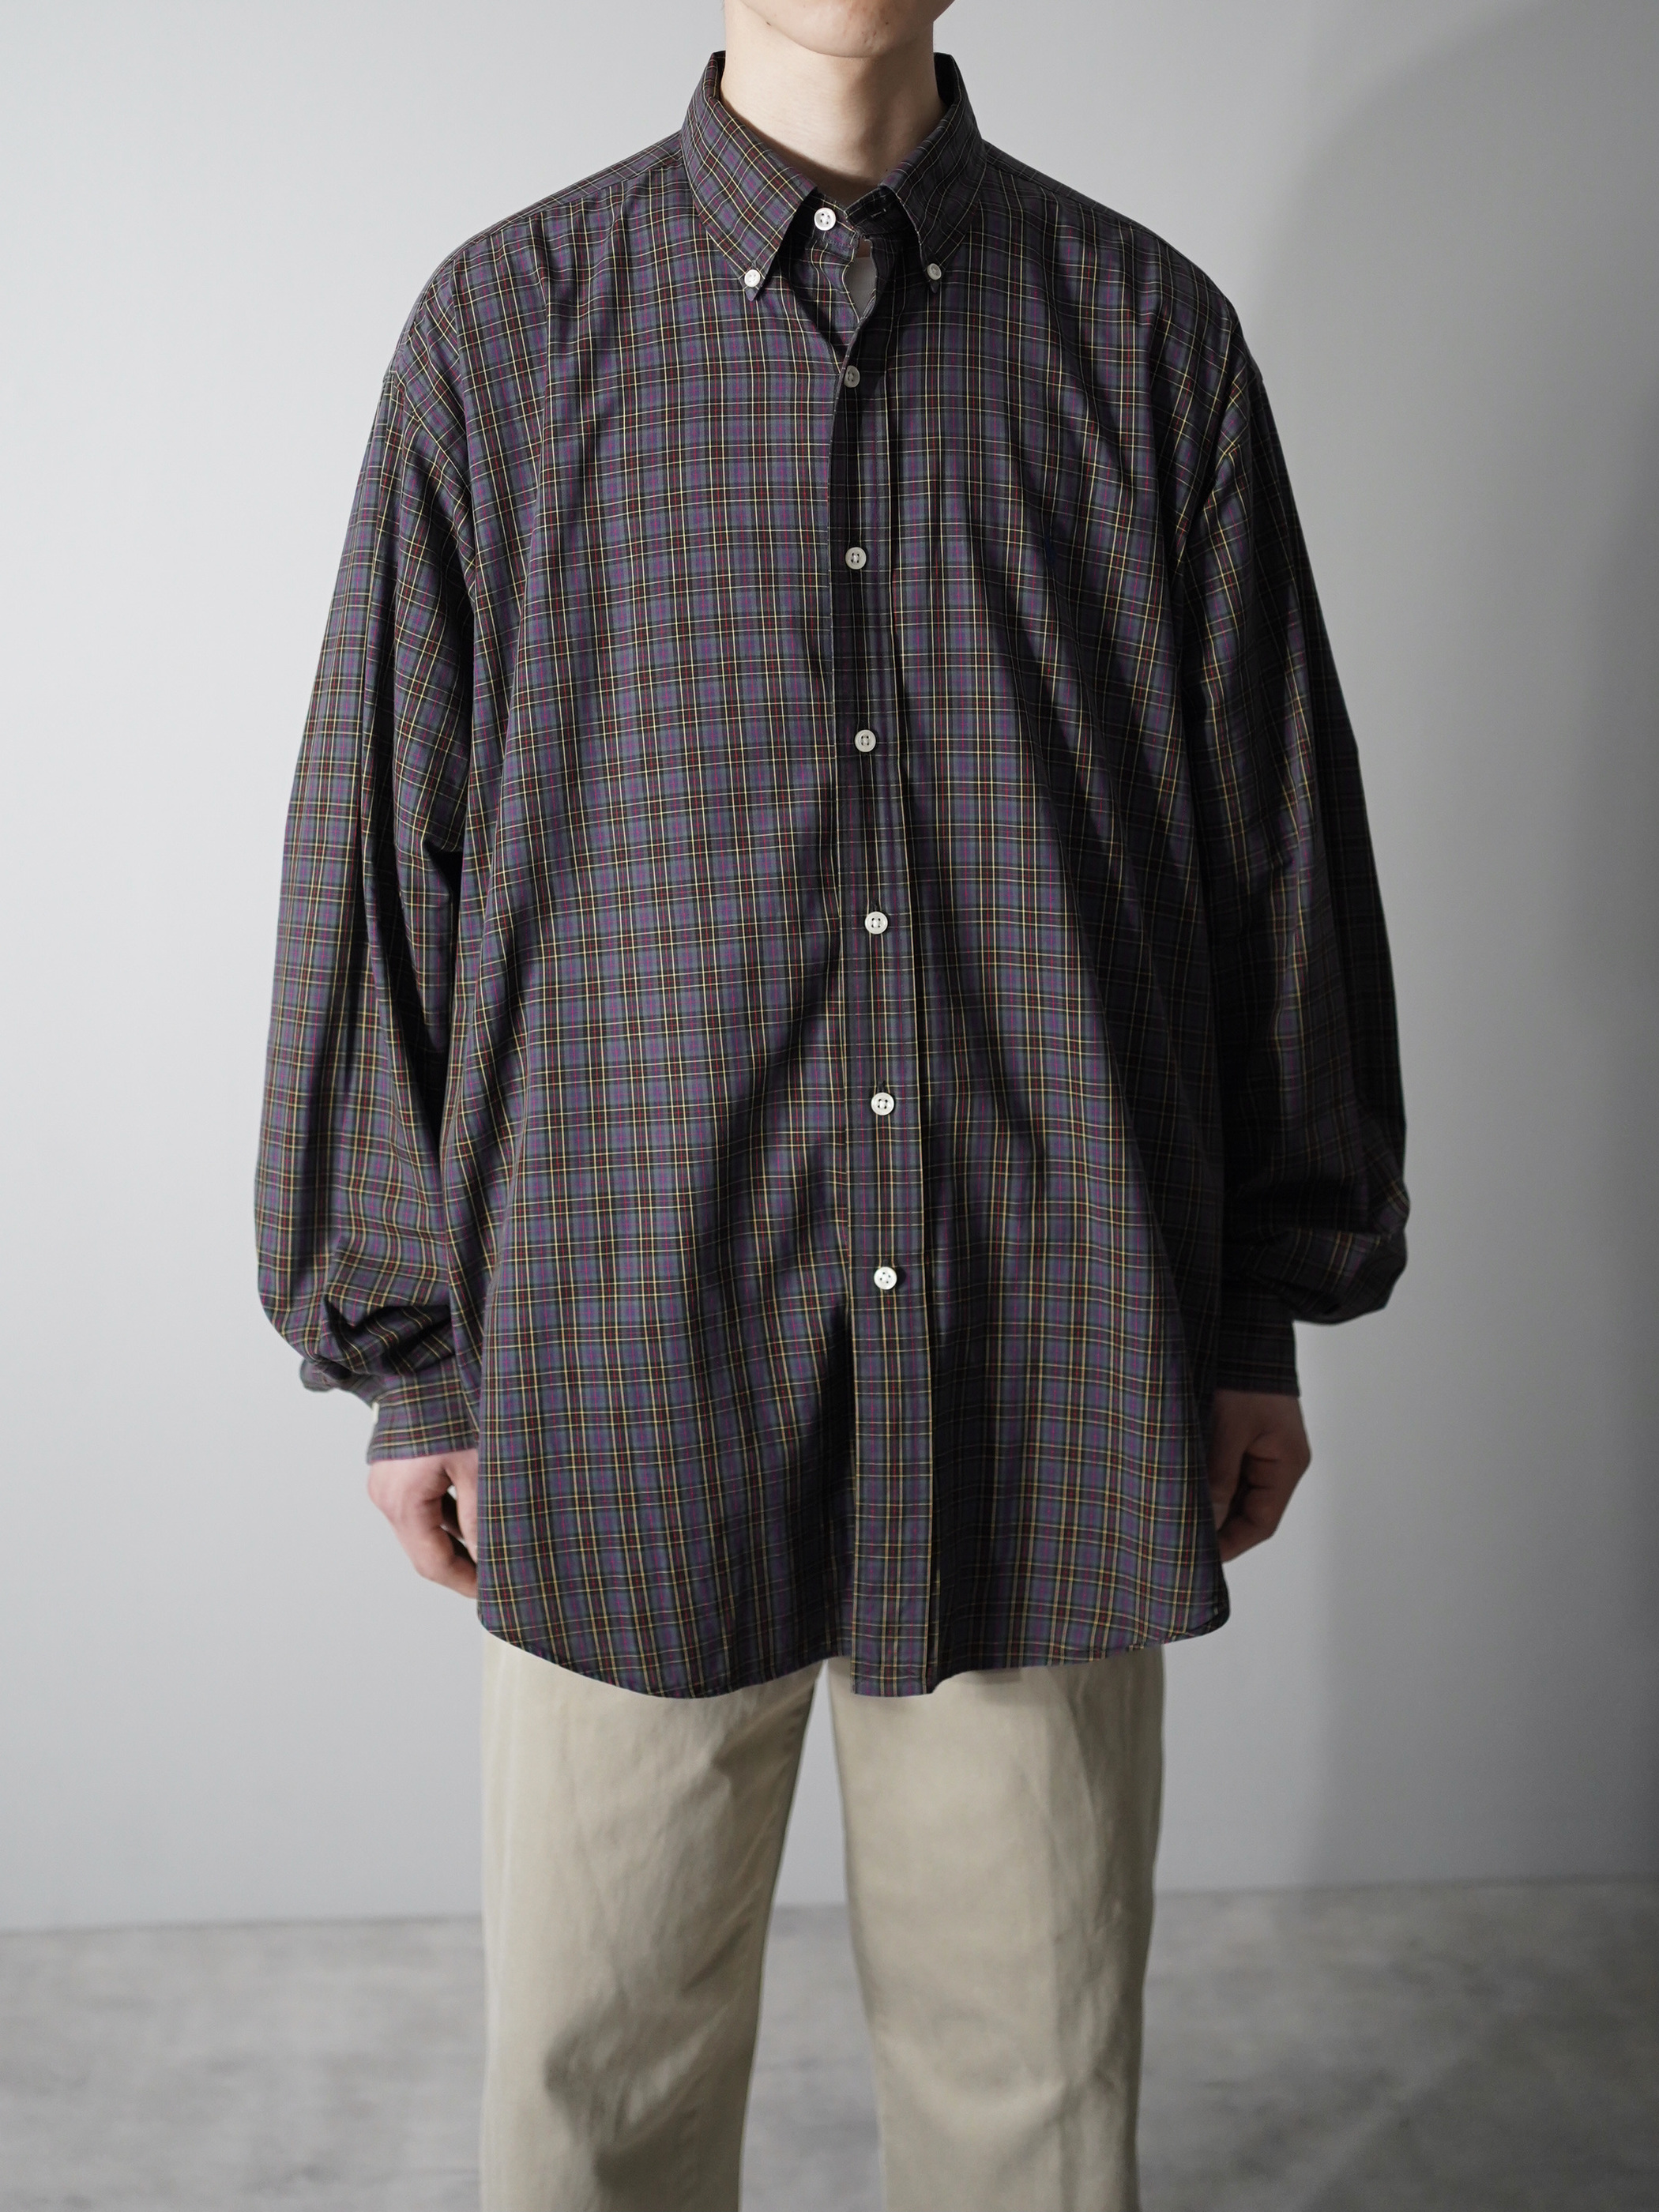 Ralph Lauren BLAKE B.D shirt / Made in Hong Kong